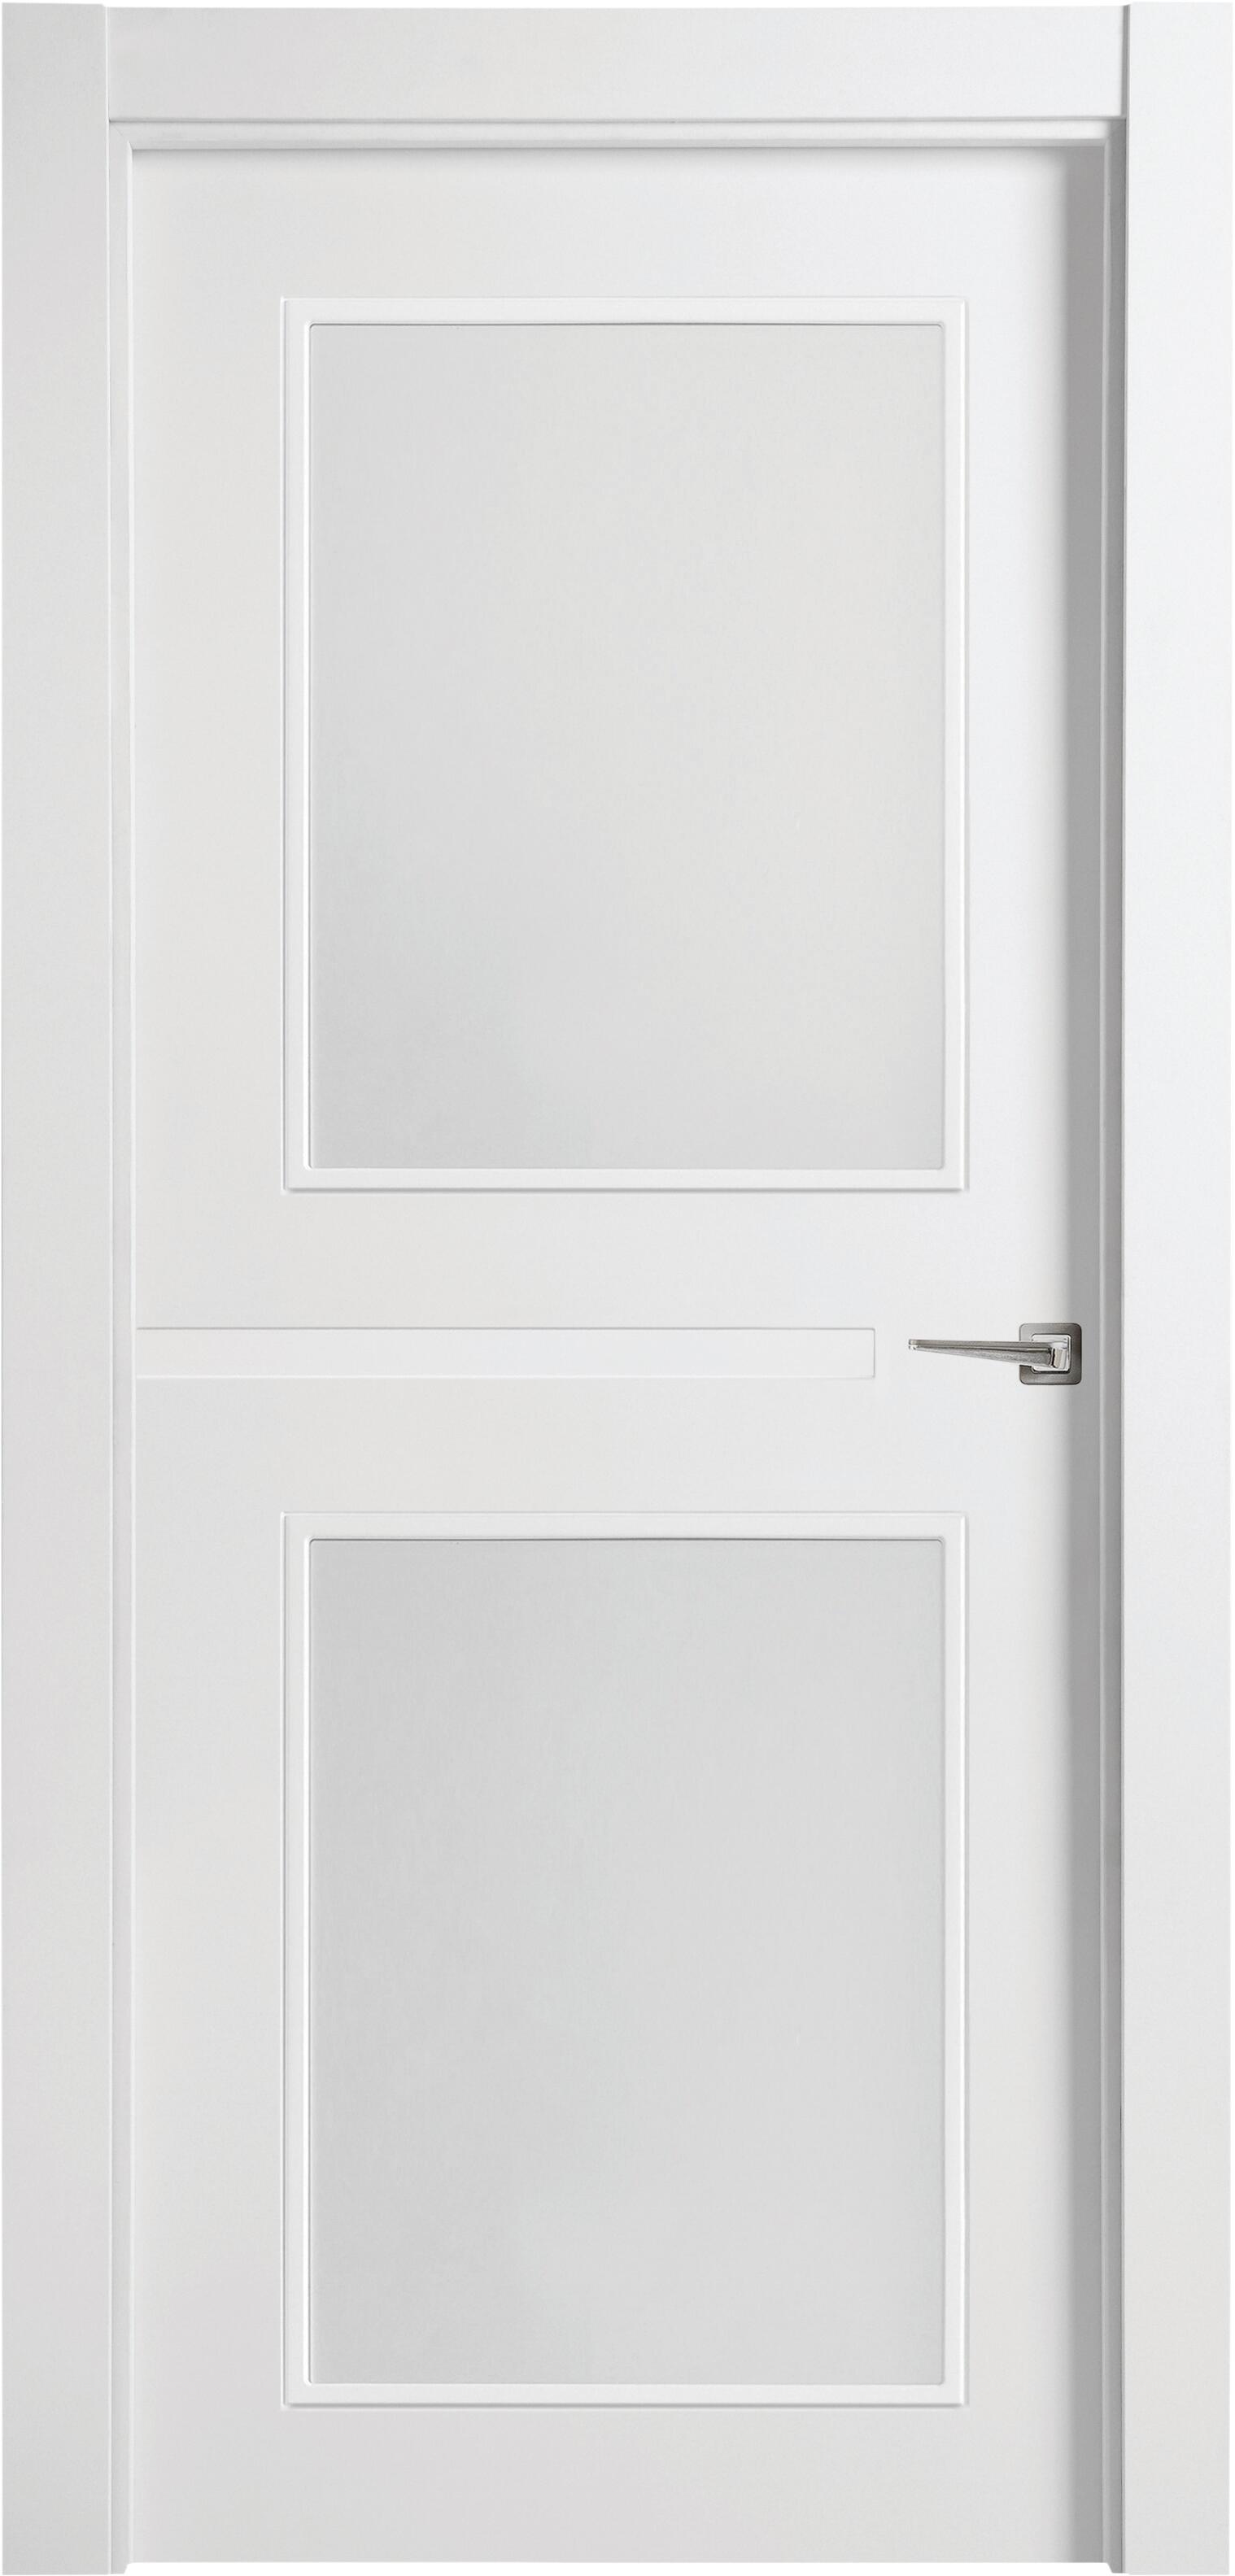 Puerta denver blanco apertura izquierda con cristal 11x72,5cm